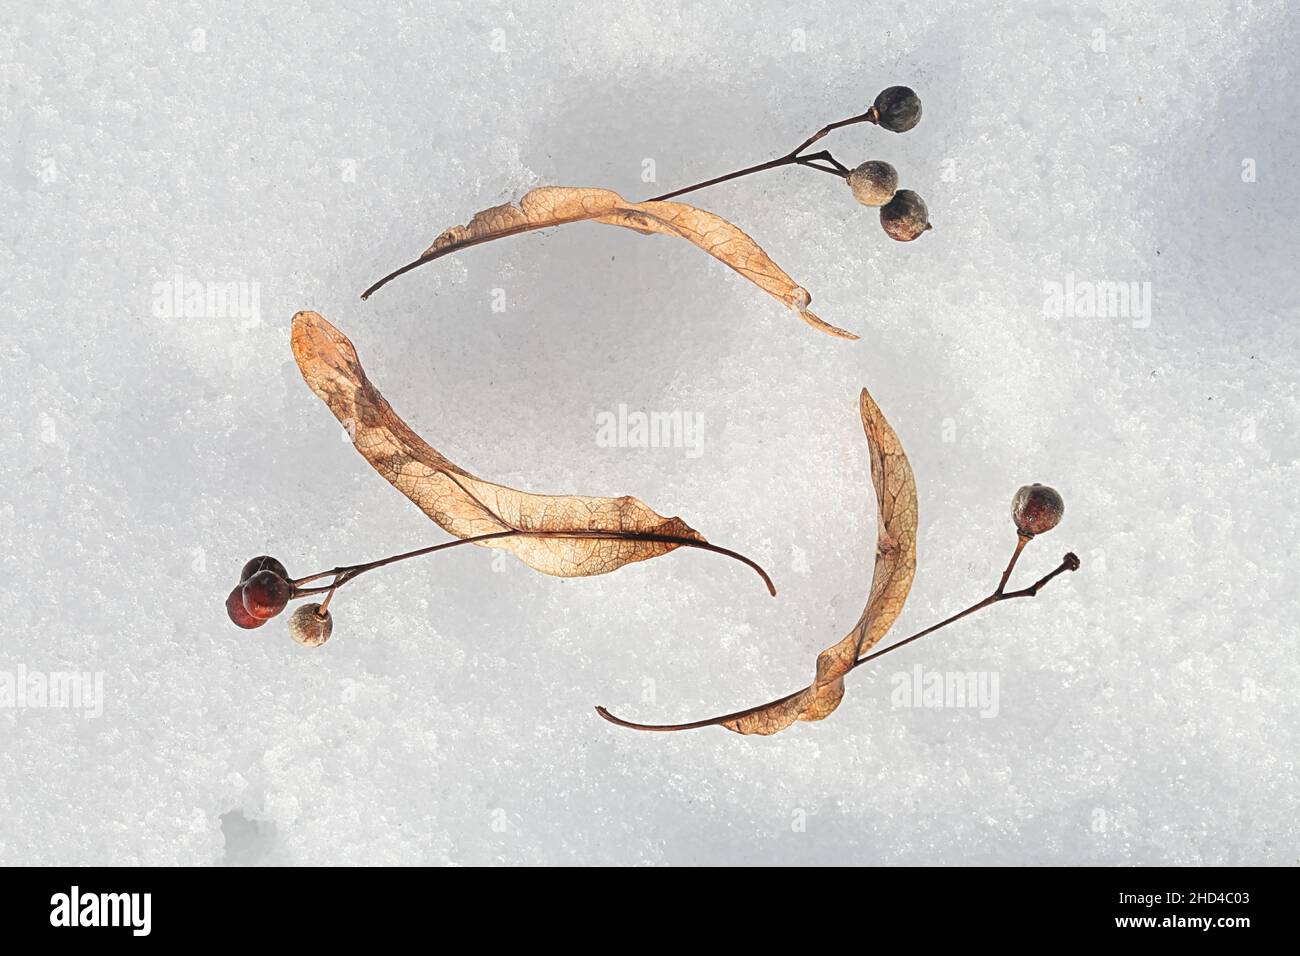 Samen von Tilia europaea, allgemein bekannt als der gewöhnliche Kalk oder die gewöhnliche Linde, fotografiert auf Schnee im März Stockfoto